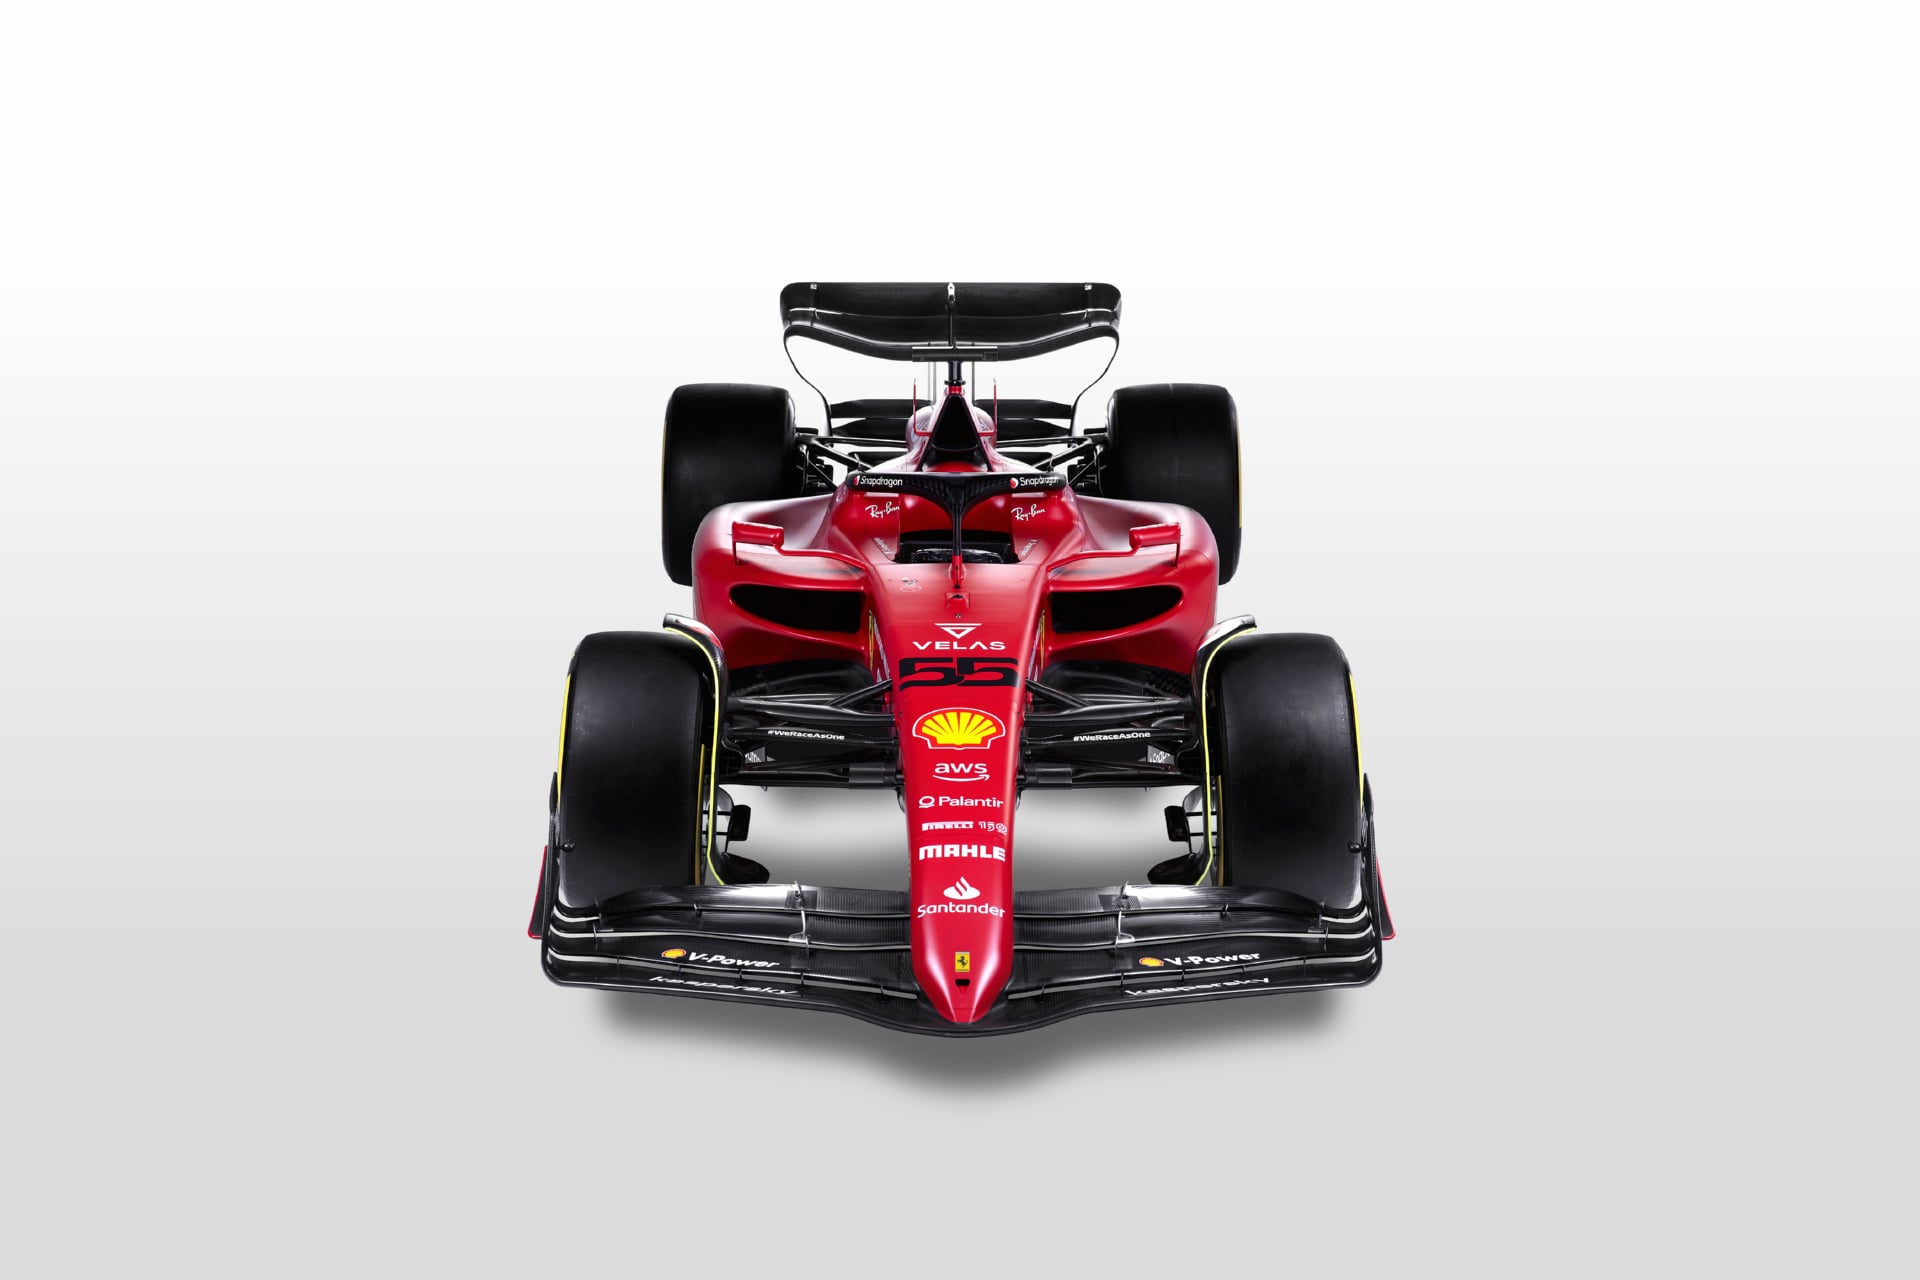 Ferrari F1-75 at 1280 x 960 size wallpapers HD quality